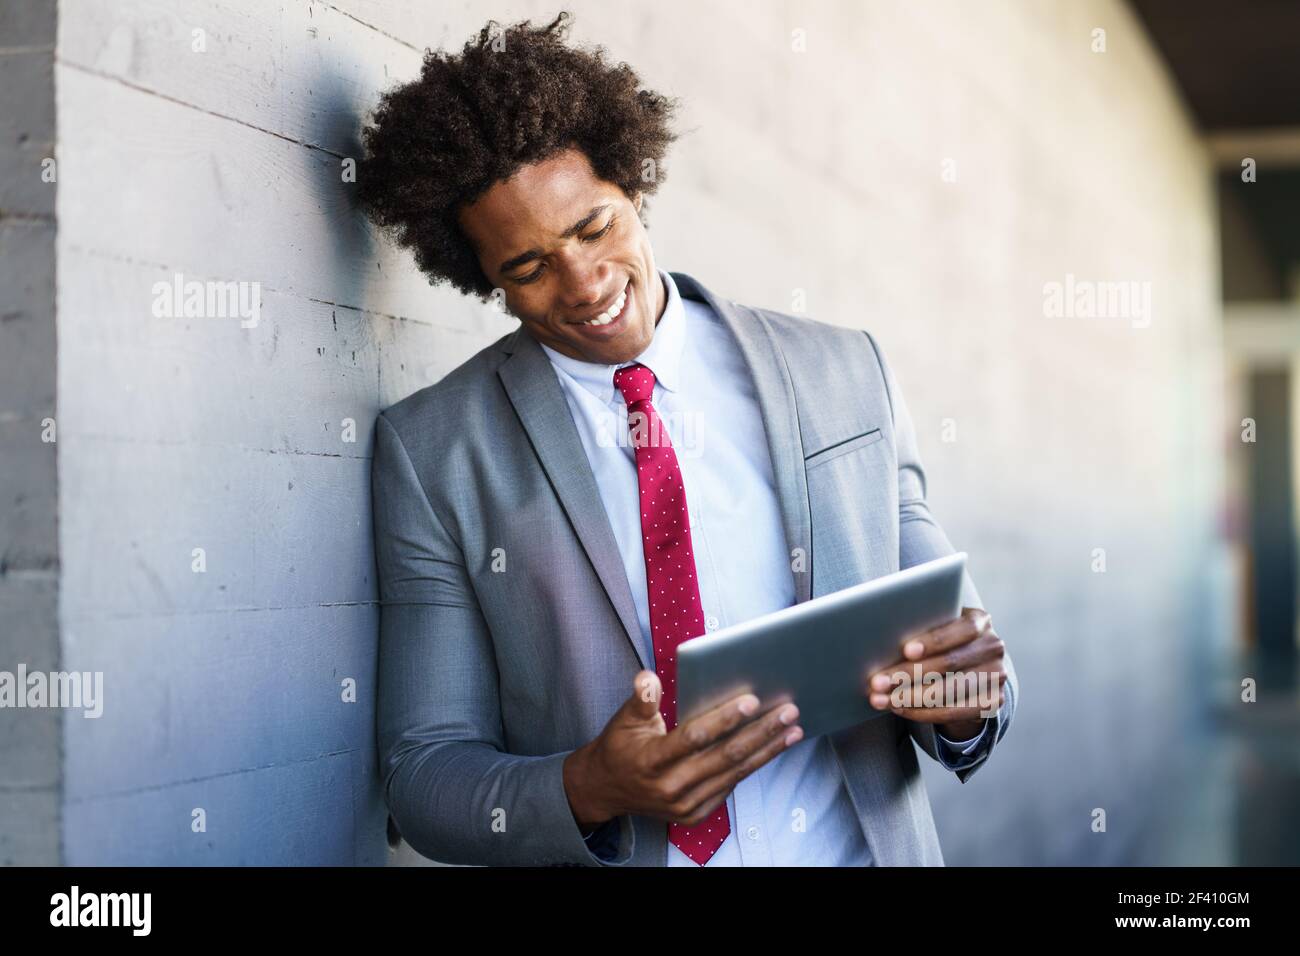 Homme d'affaires noir utilisant une tablette numérique en milieu urbain. Homme avec cheveux afro.. Homme d'affaires noir utilisant une tablette numérique en milieu urbain Banque D'Images